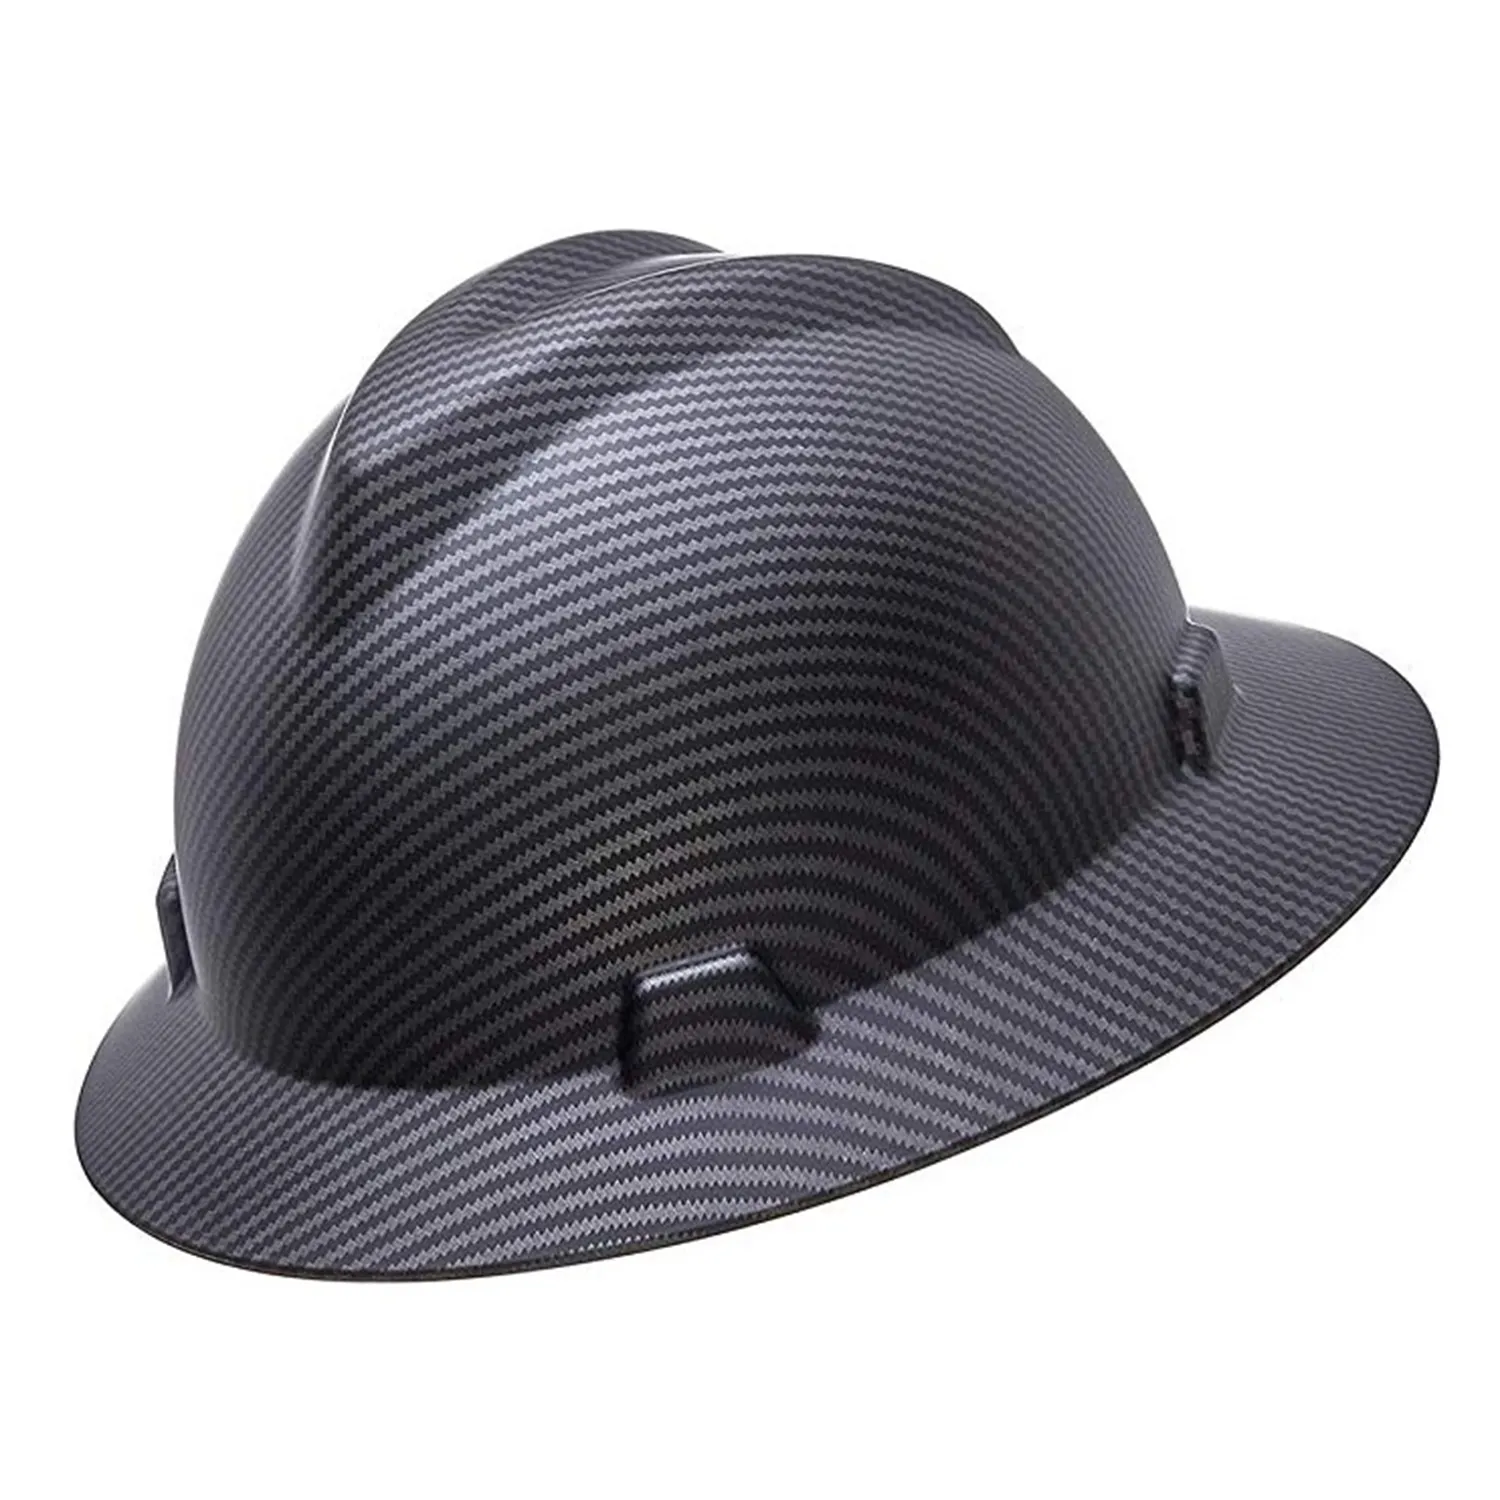 หมวกป้องกันการก่อสร้างแบบแข็งน้ำหนักเบา,หมวกนิรภัยในอุตสาหกรรม ANSI คาร์บอนไฟเบอร์ HDPE พลาสติกเสริมแรง CFRP Splash Guard Style